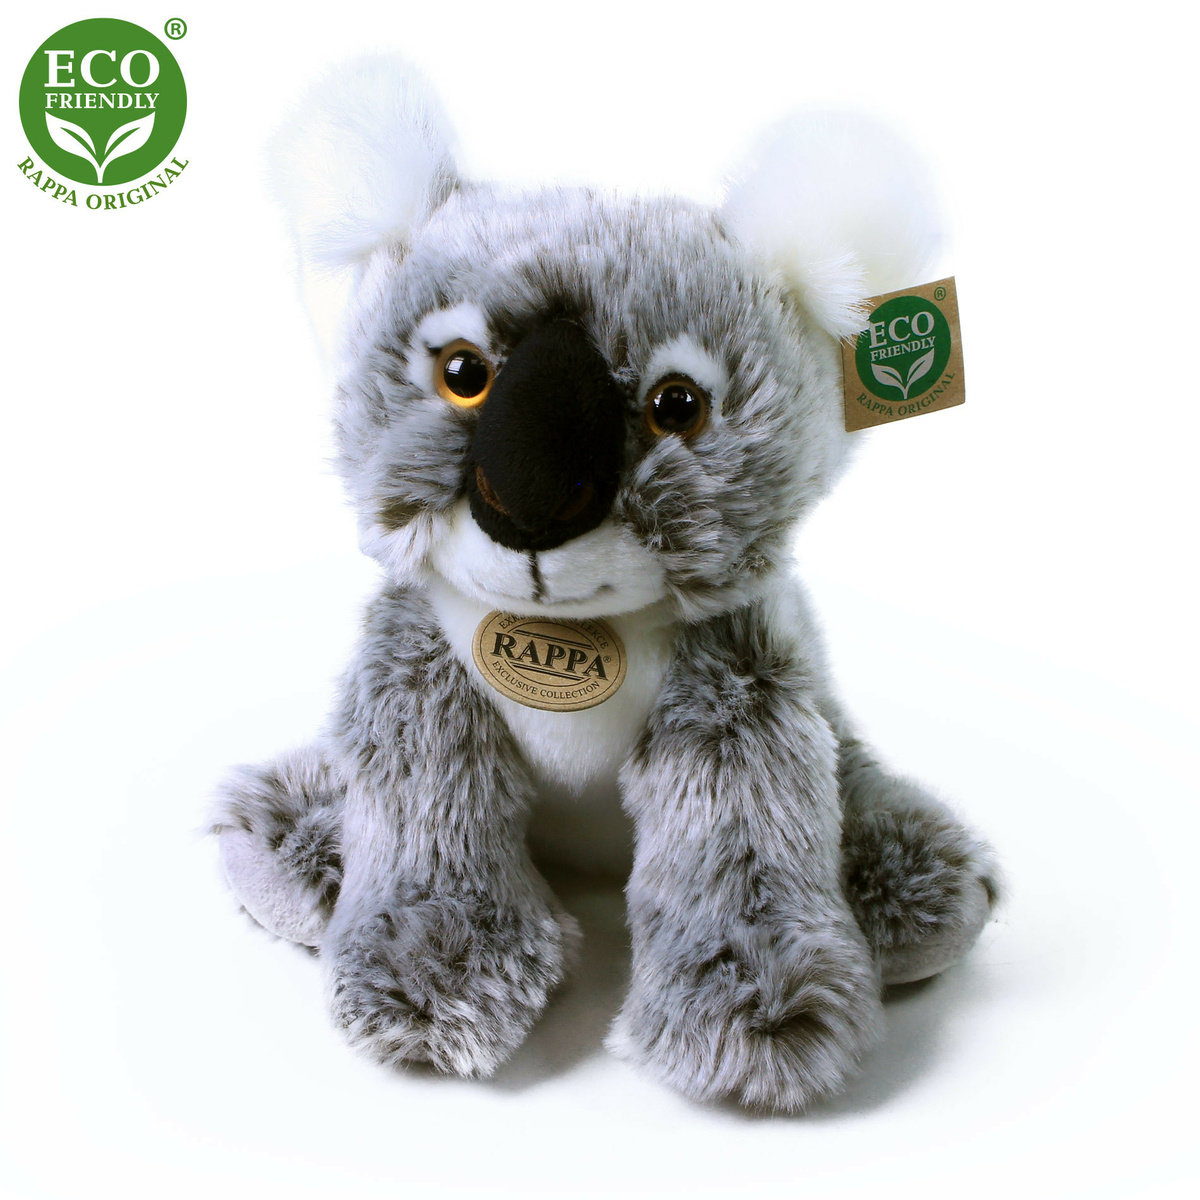 Fotografie PLYŠ Koala 26cm sedící Eco-Friendly *PLYŠOVÉ HRAČKY*